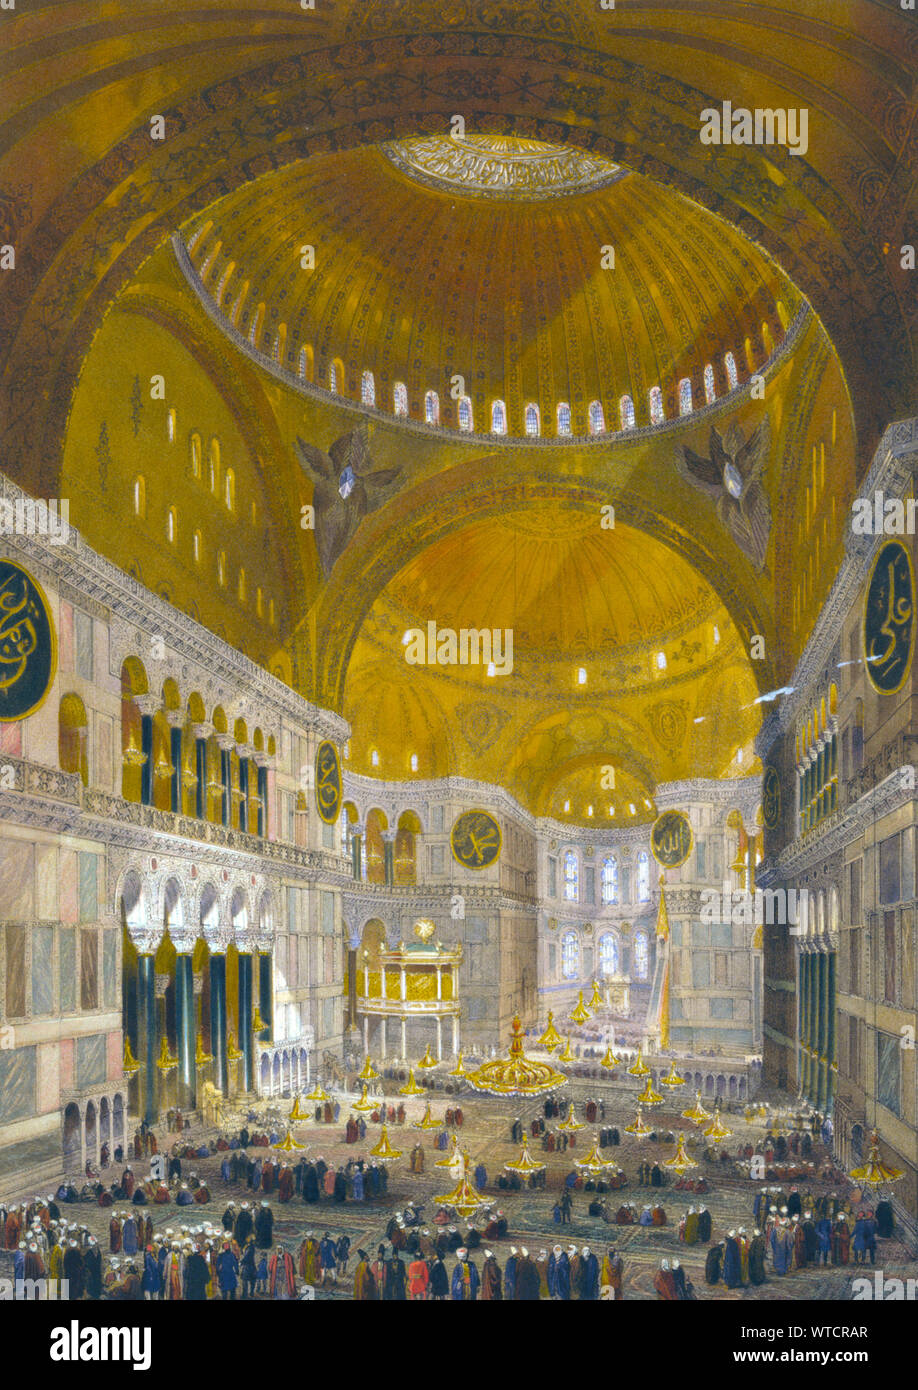 Nave de la mezquita de Ayasofya, antiguamente la Iglesia de Hagia Sophia, que mira hacia el oriente; con grupos de hombres en trajes tradicionales. Turquía (Imperio Otomano). Foto de stock